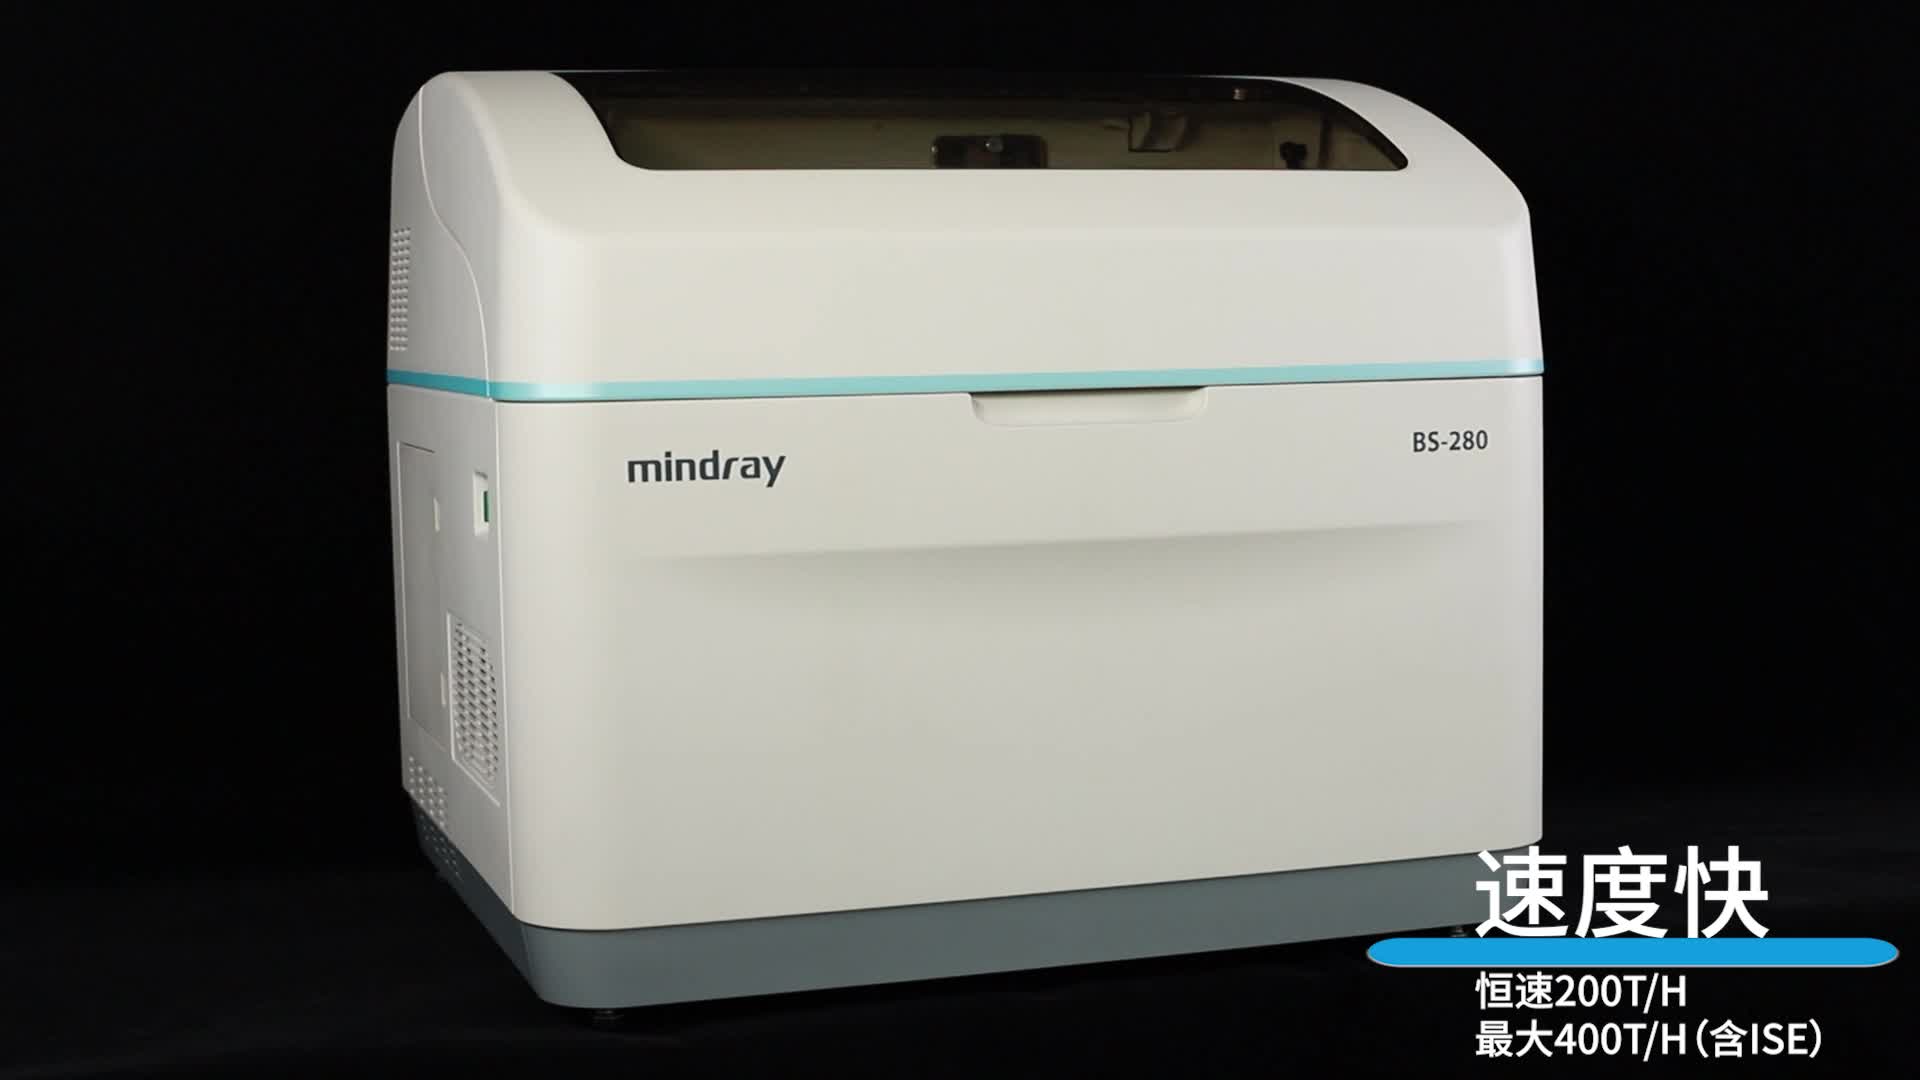 迈瑞mindray 全自动生化分析仪 bs